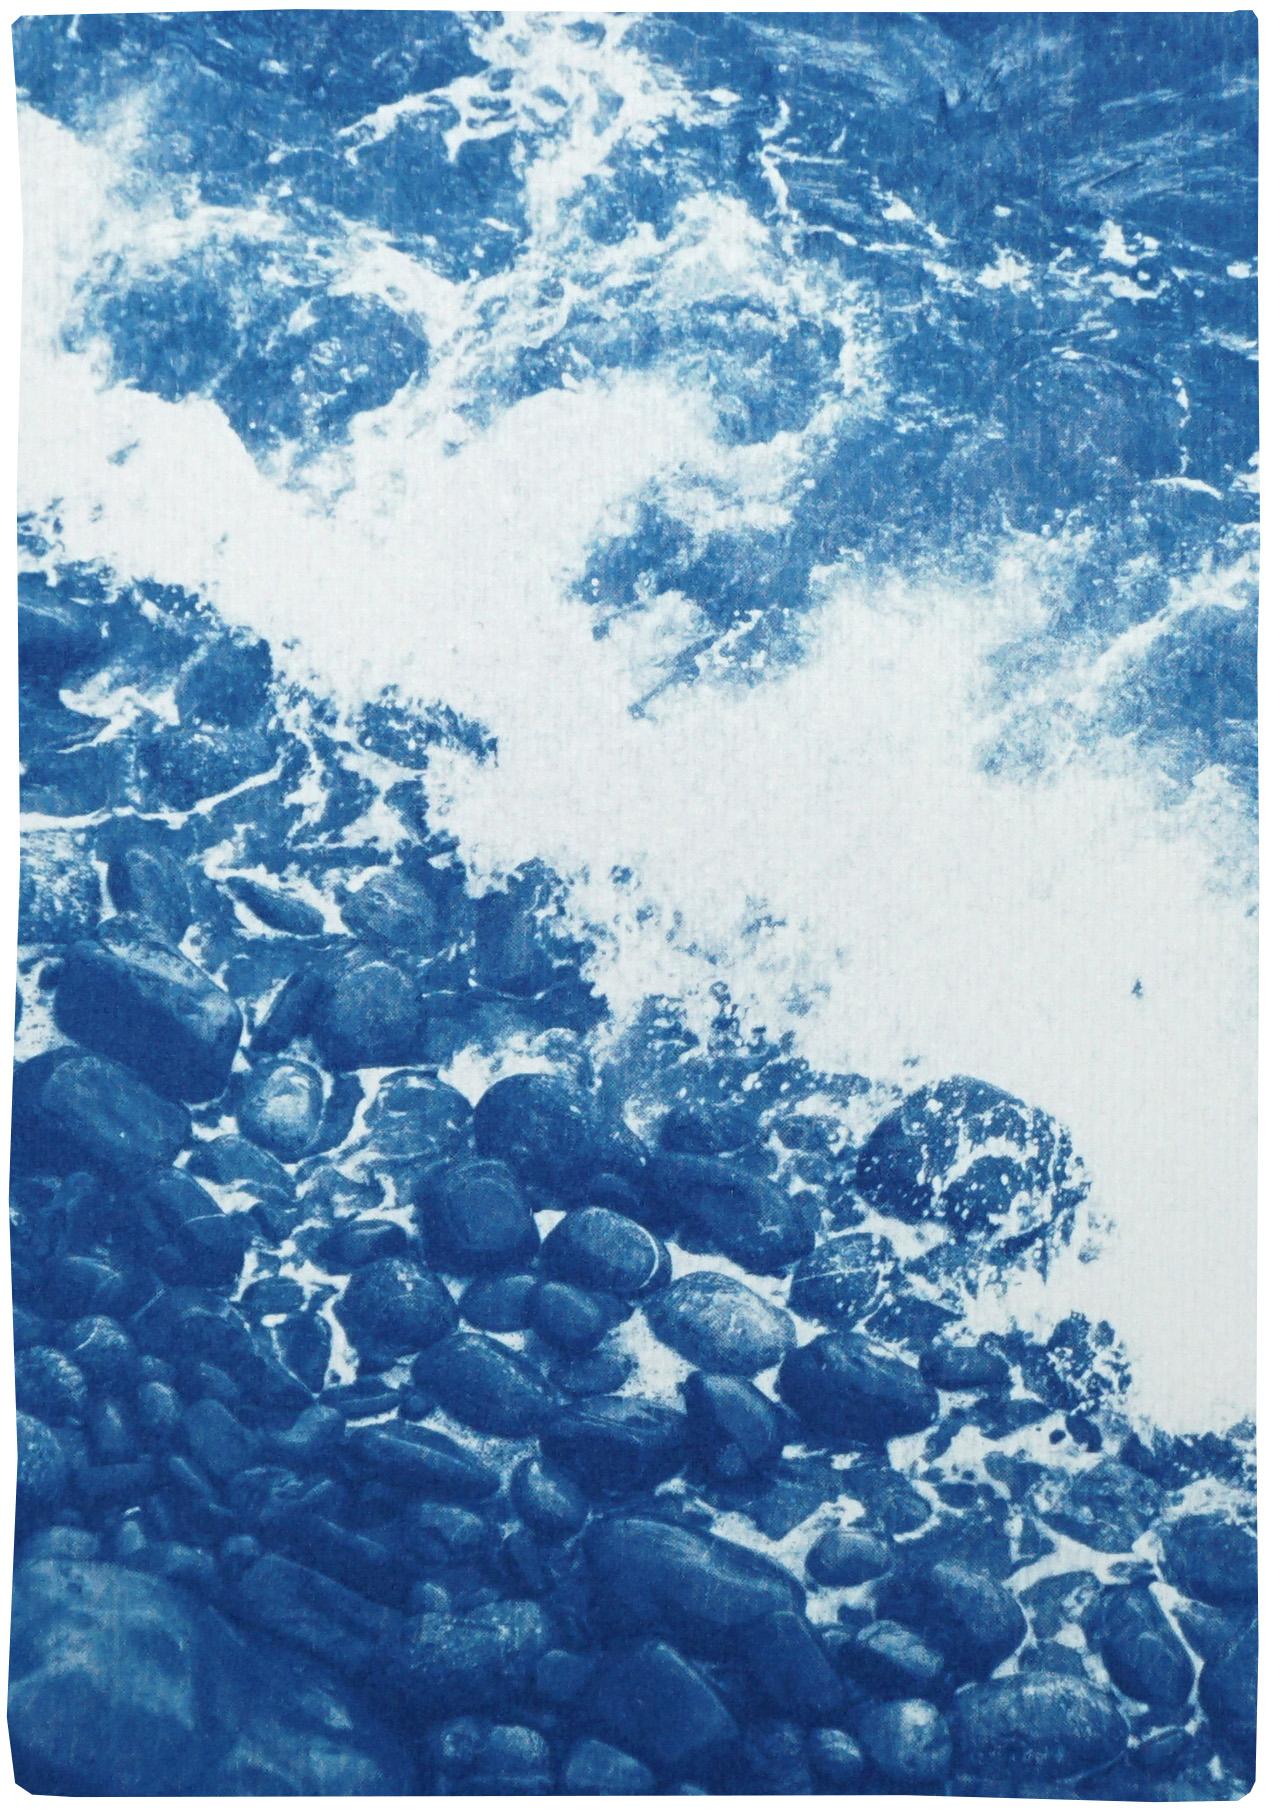 Diese Serie von Cyanotypie-Triptychen zeigt die Schönheit von Naturszenen, darunter atemberaubende Strände und Ozeane sowie die komplizierten Texturen von Wasser, Wäldern und Himmel. Diese Triptychen sind großformatig und in satten Blautönen